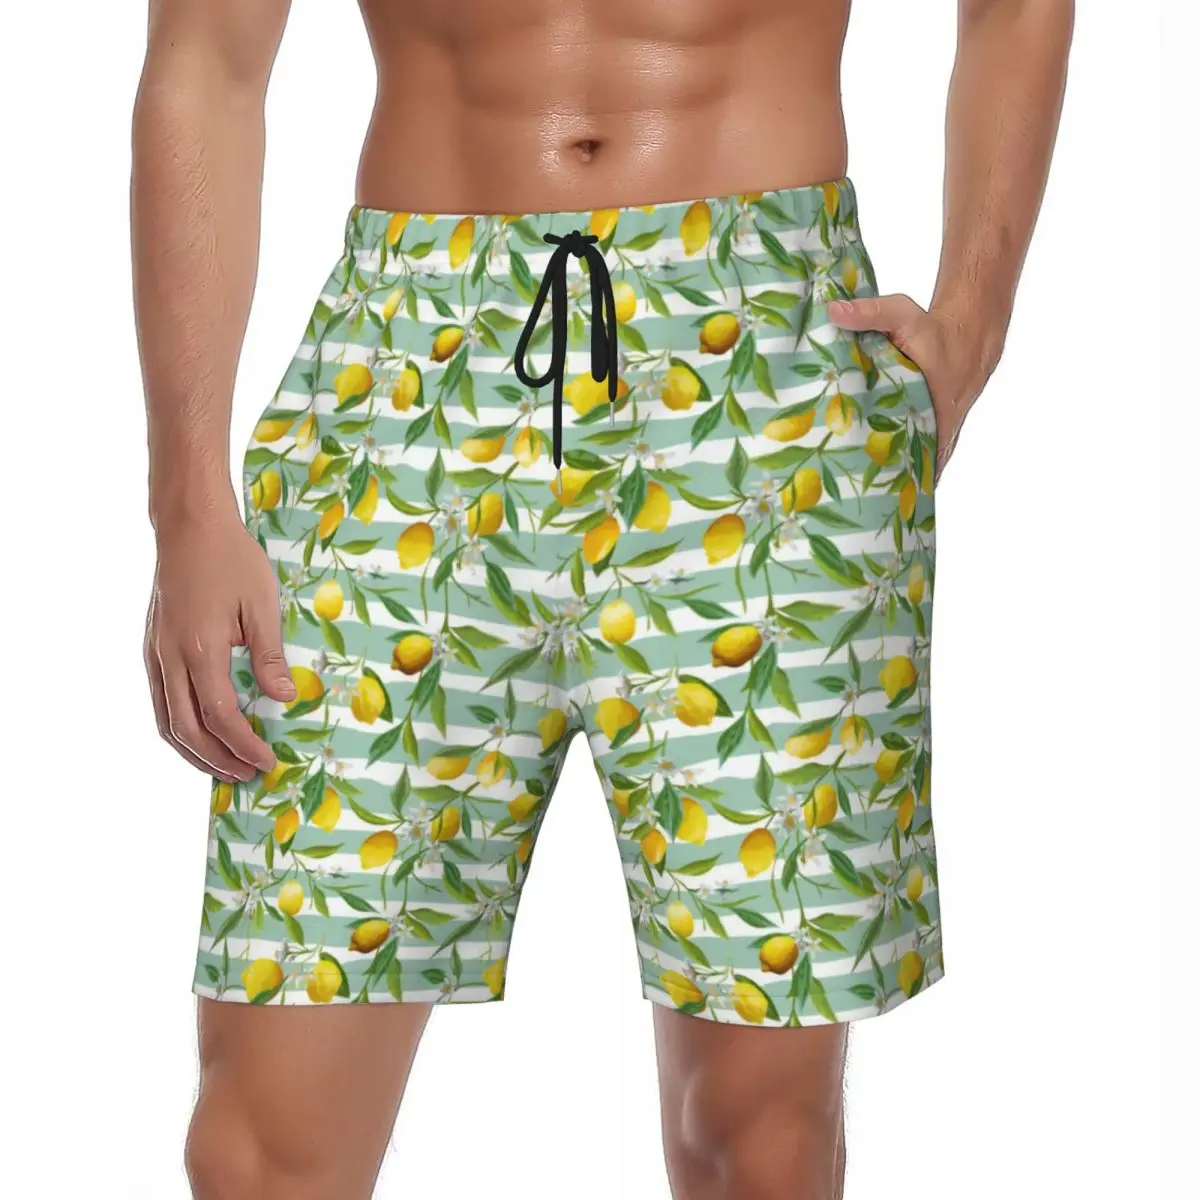 

Шорты мужские спортивные в полоску, быстросохнущие штаны для спортзала, гавайский рисунок, лимонный цветок, летние большие плавки